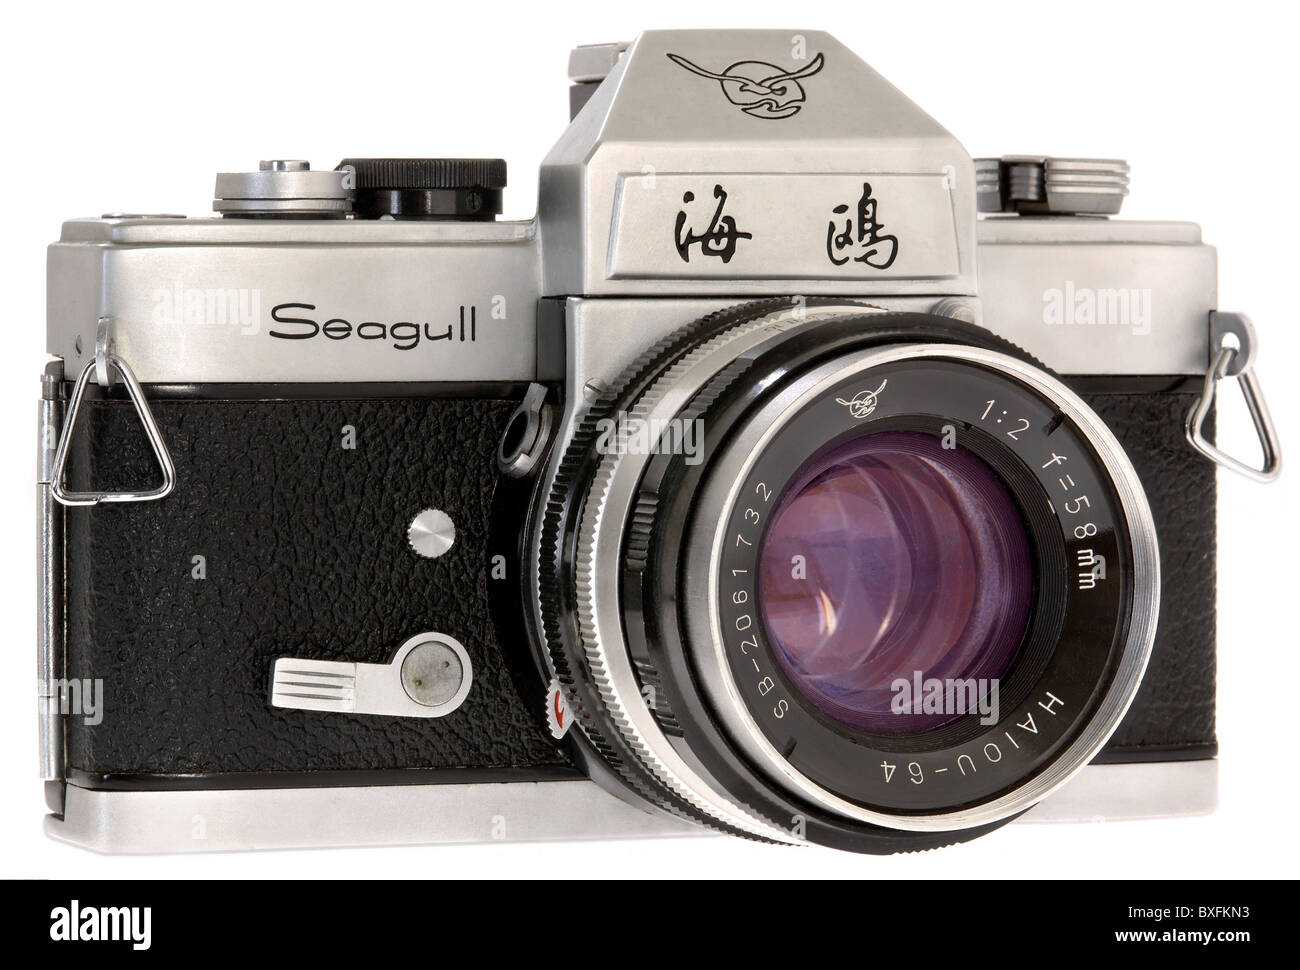 Fotografia, fotocamere, reflex, Seagull, Cina, circa 1979, diritti aggiuntivi-clearences-non disponibile Foto Stock